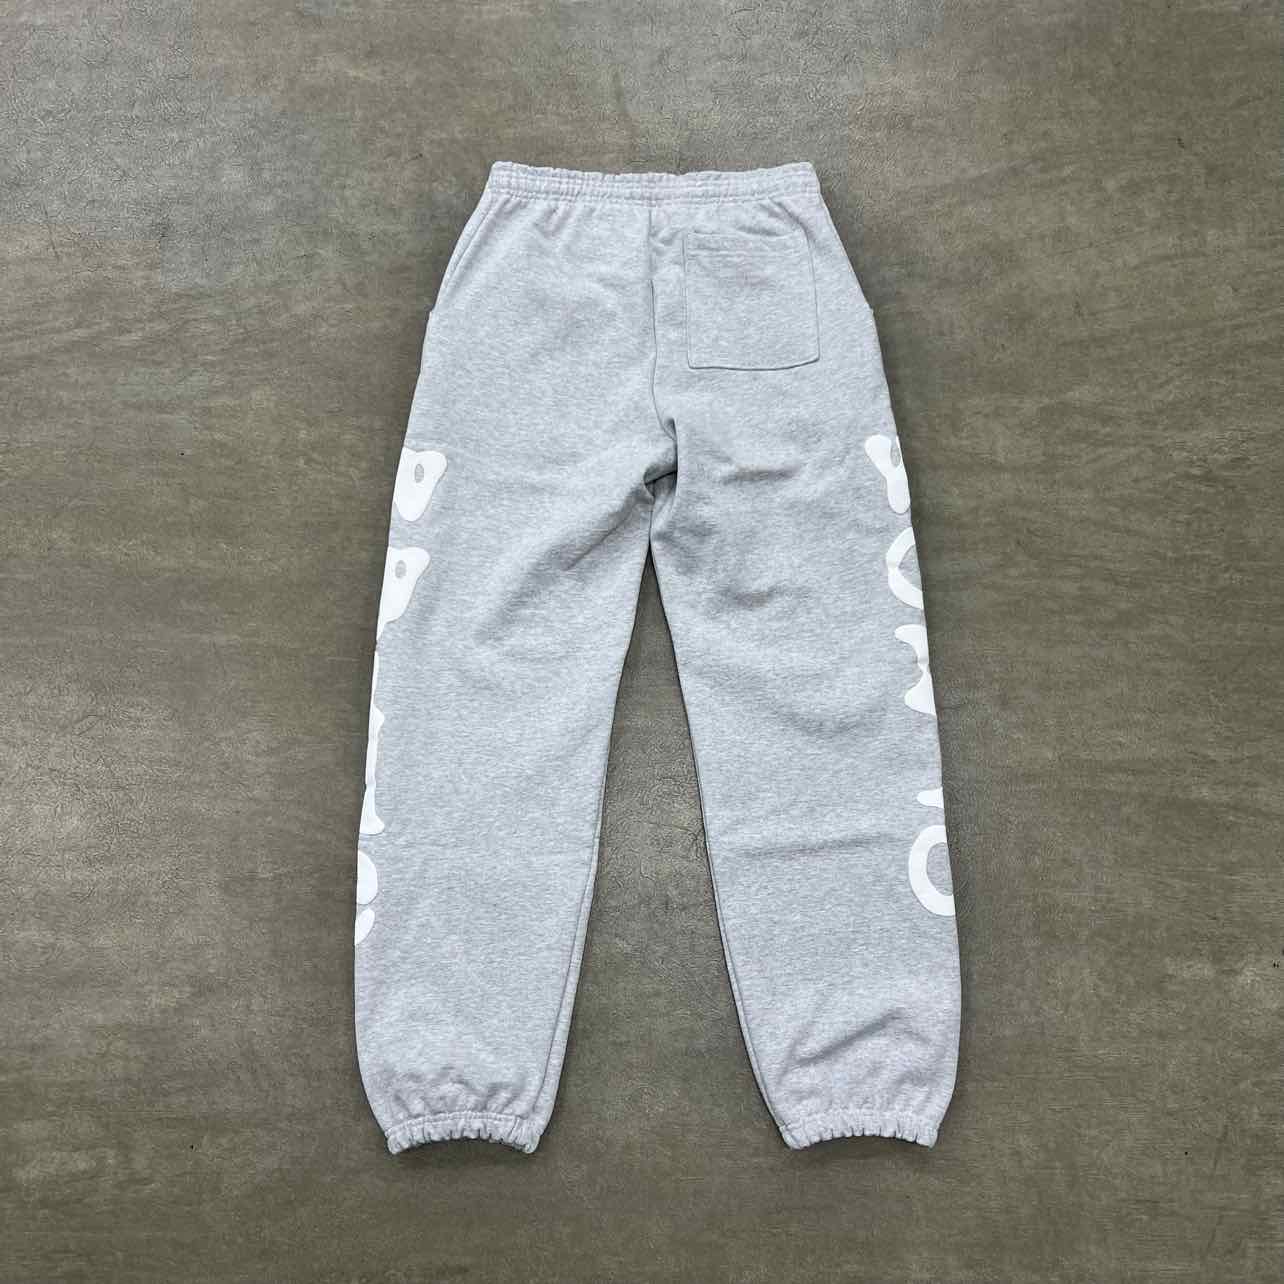 Sp5der Sweatpants &quot;BELUGA&quot; Grey New Size XL